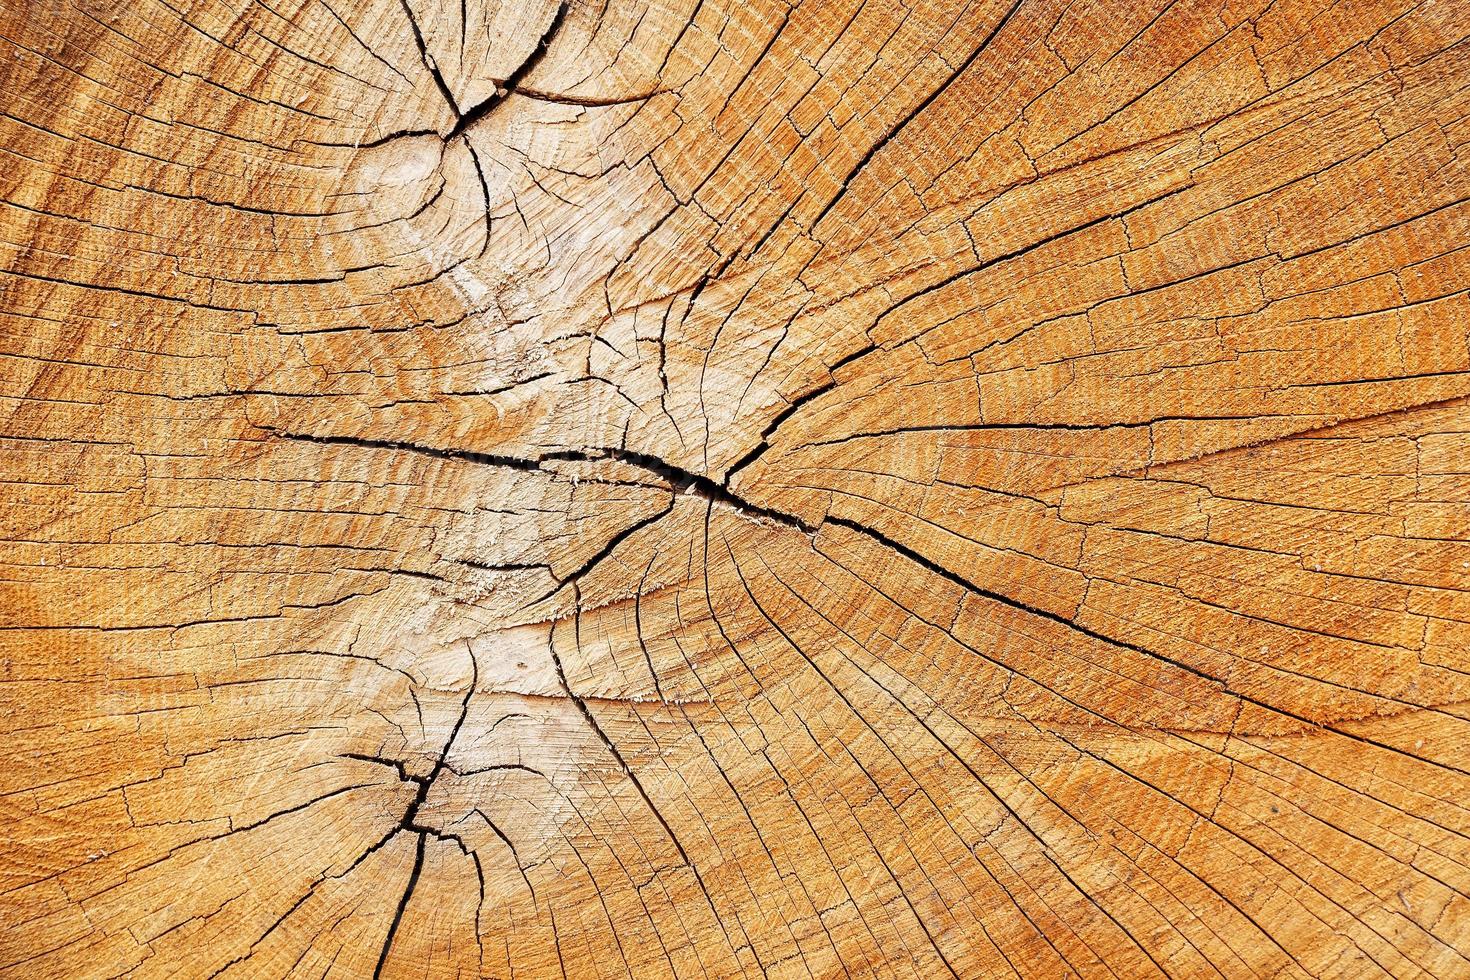 o toco de uma árvore derrubada, um corte do tronco com anéis e rachaduras anuais, a textura do toco serrado foto